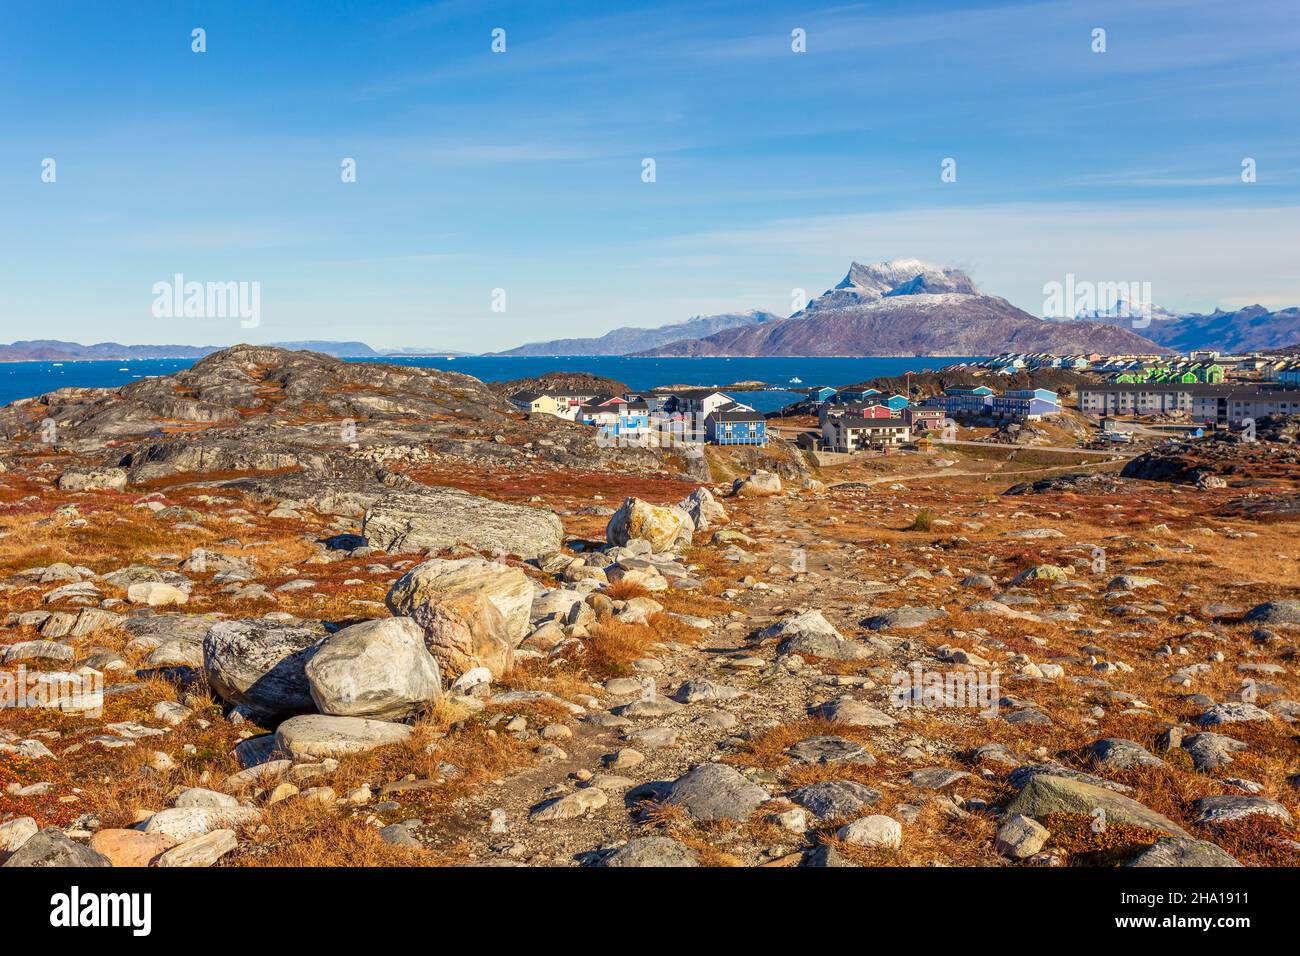 Automne toundra groenlandaise avec herbe d'orange, pierres, peuplement inuit et montagne Sermitsiaq en arrière-plan, Nuuk, Groenland Banque D'Images